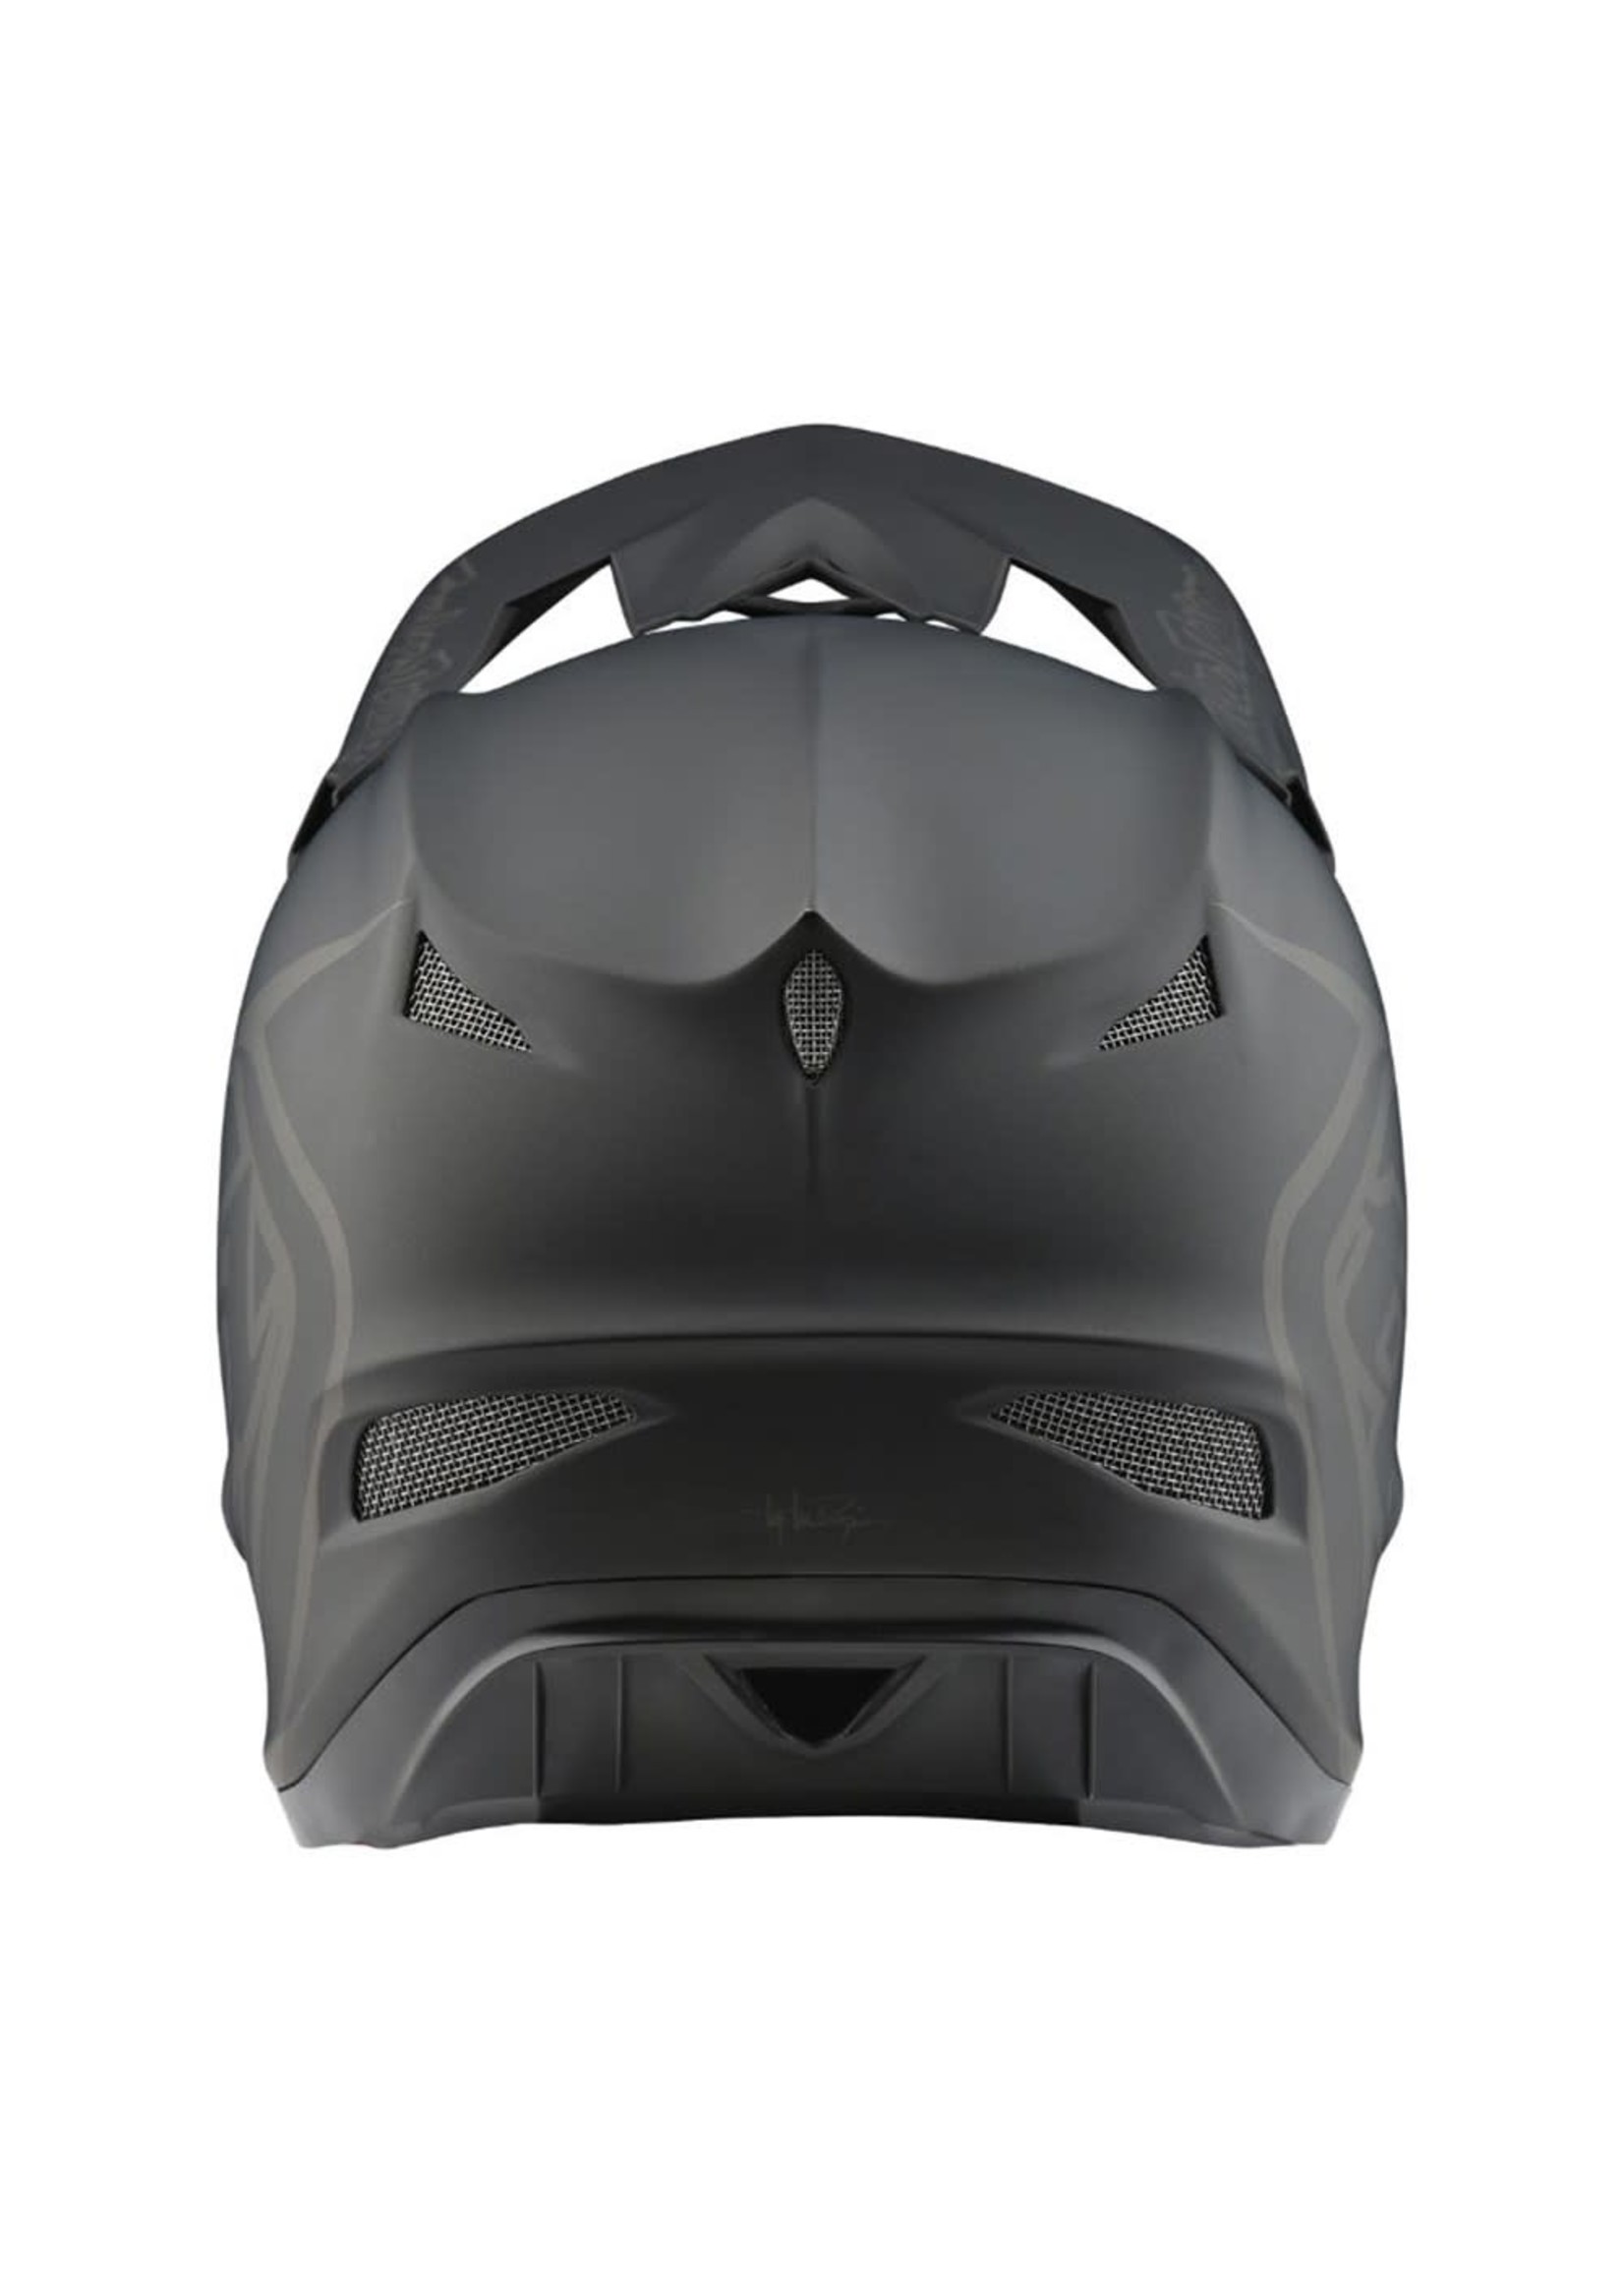 Troylee Designs Helmet TLD D3 Fiberlite